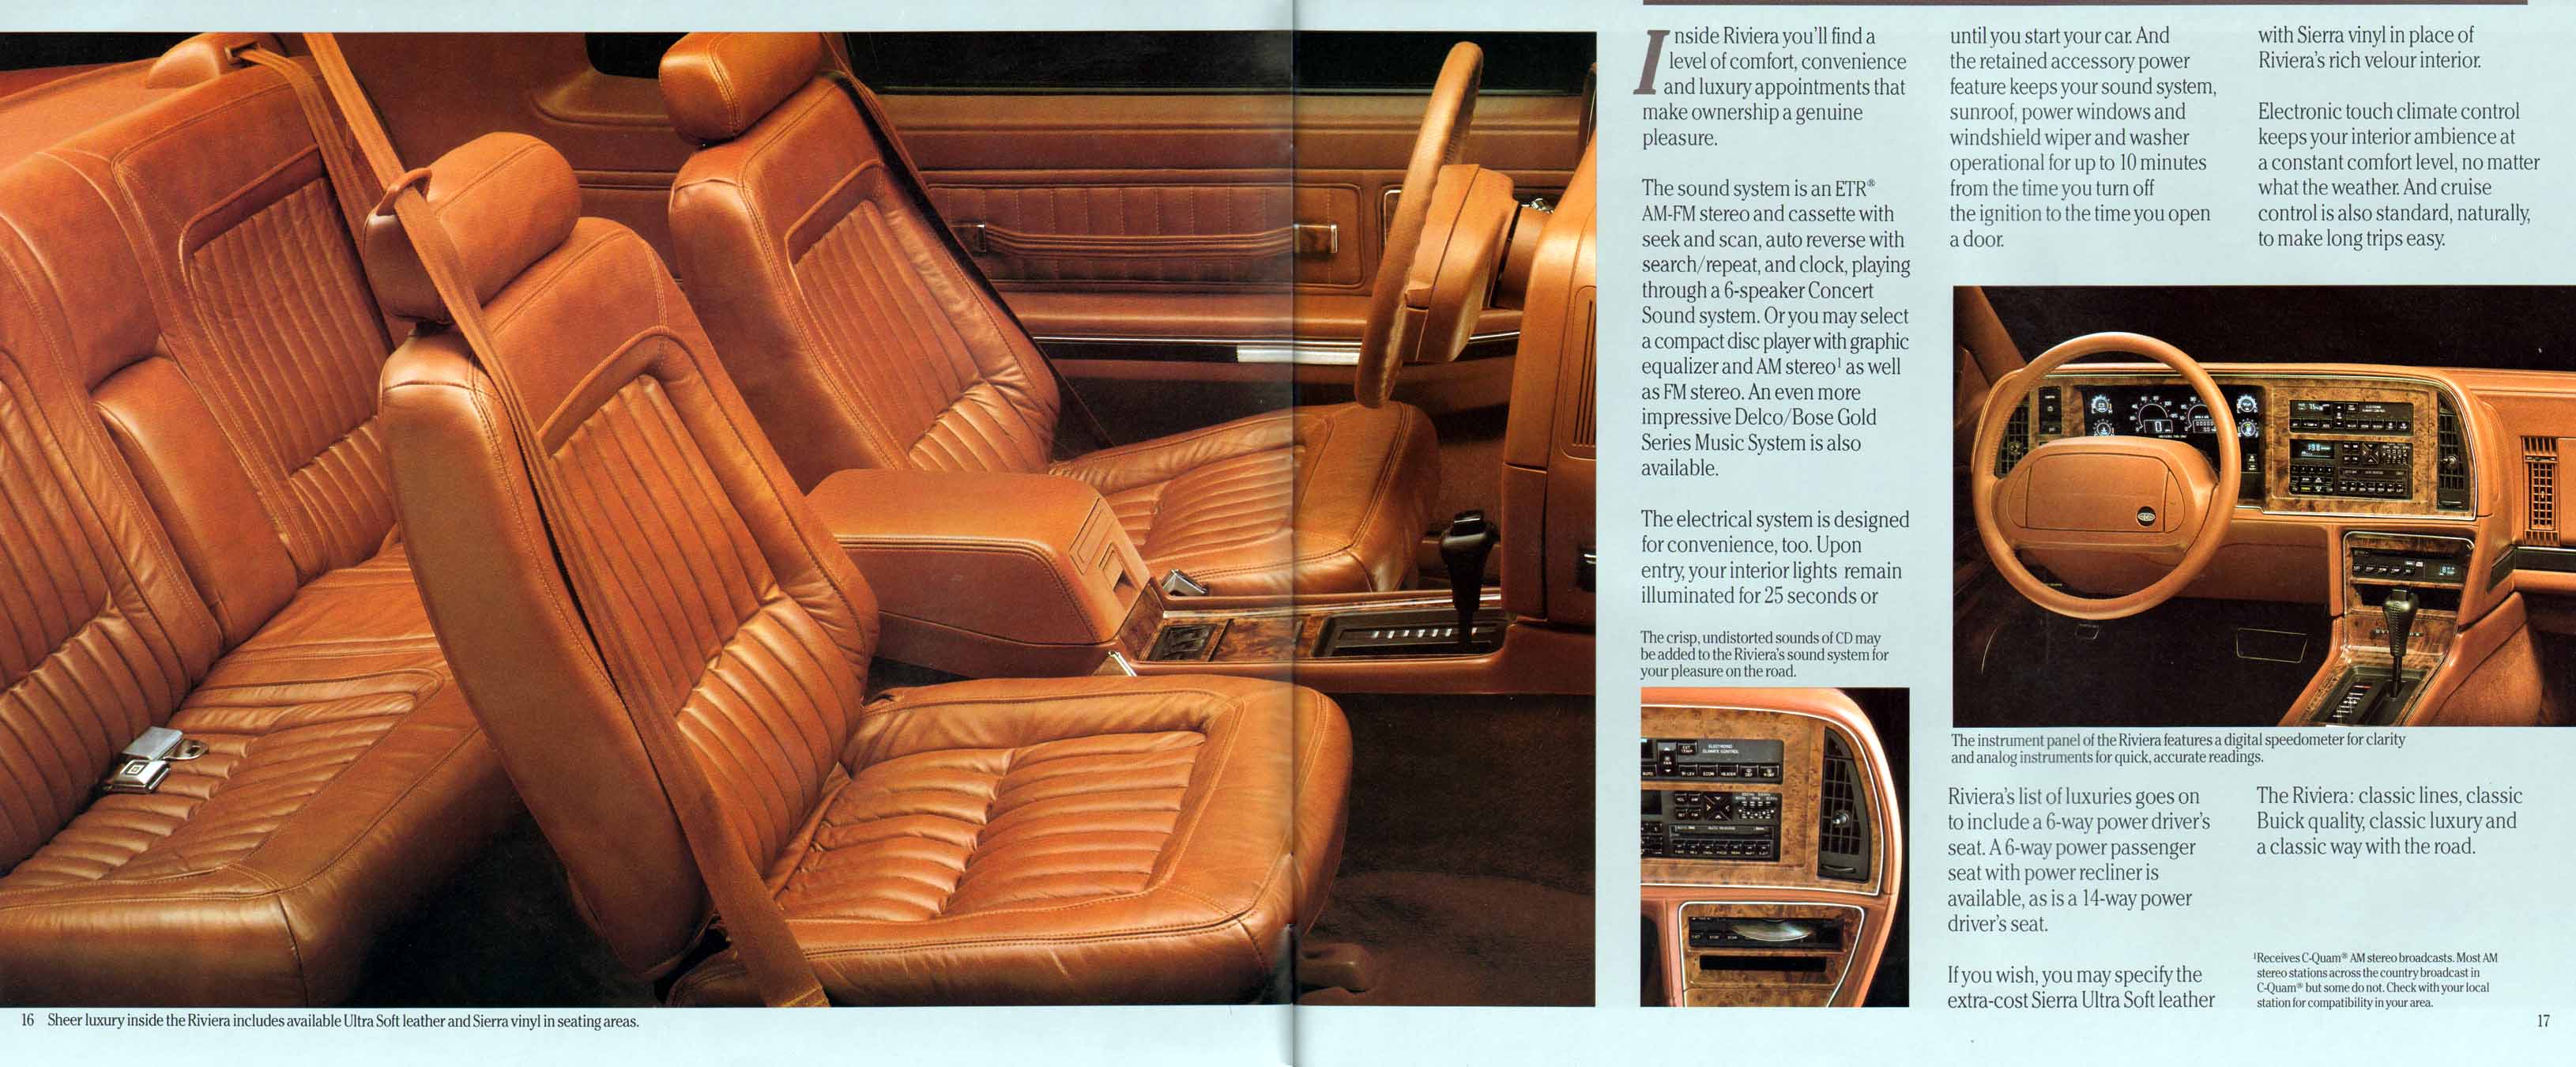 1991 Buick Full Line Prestige-18-19